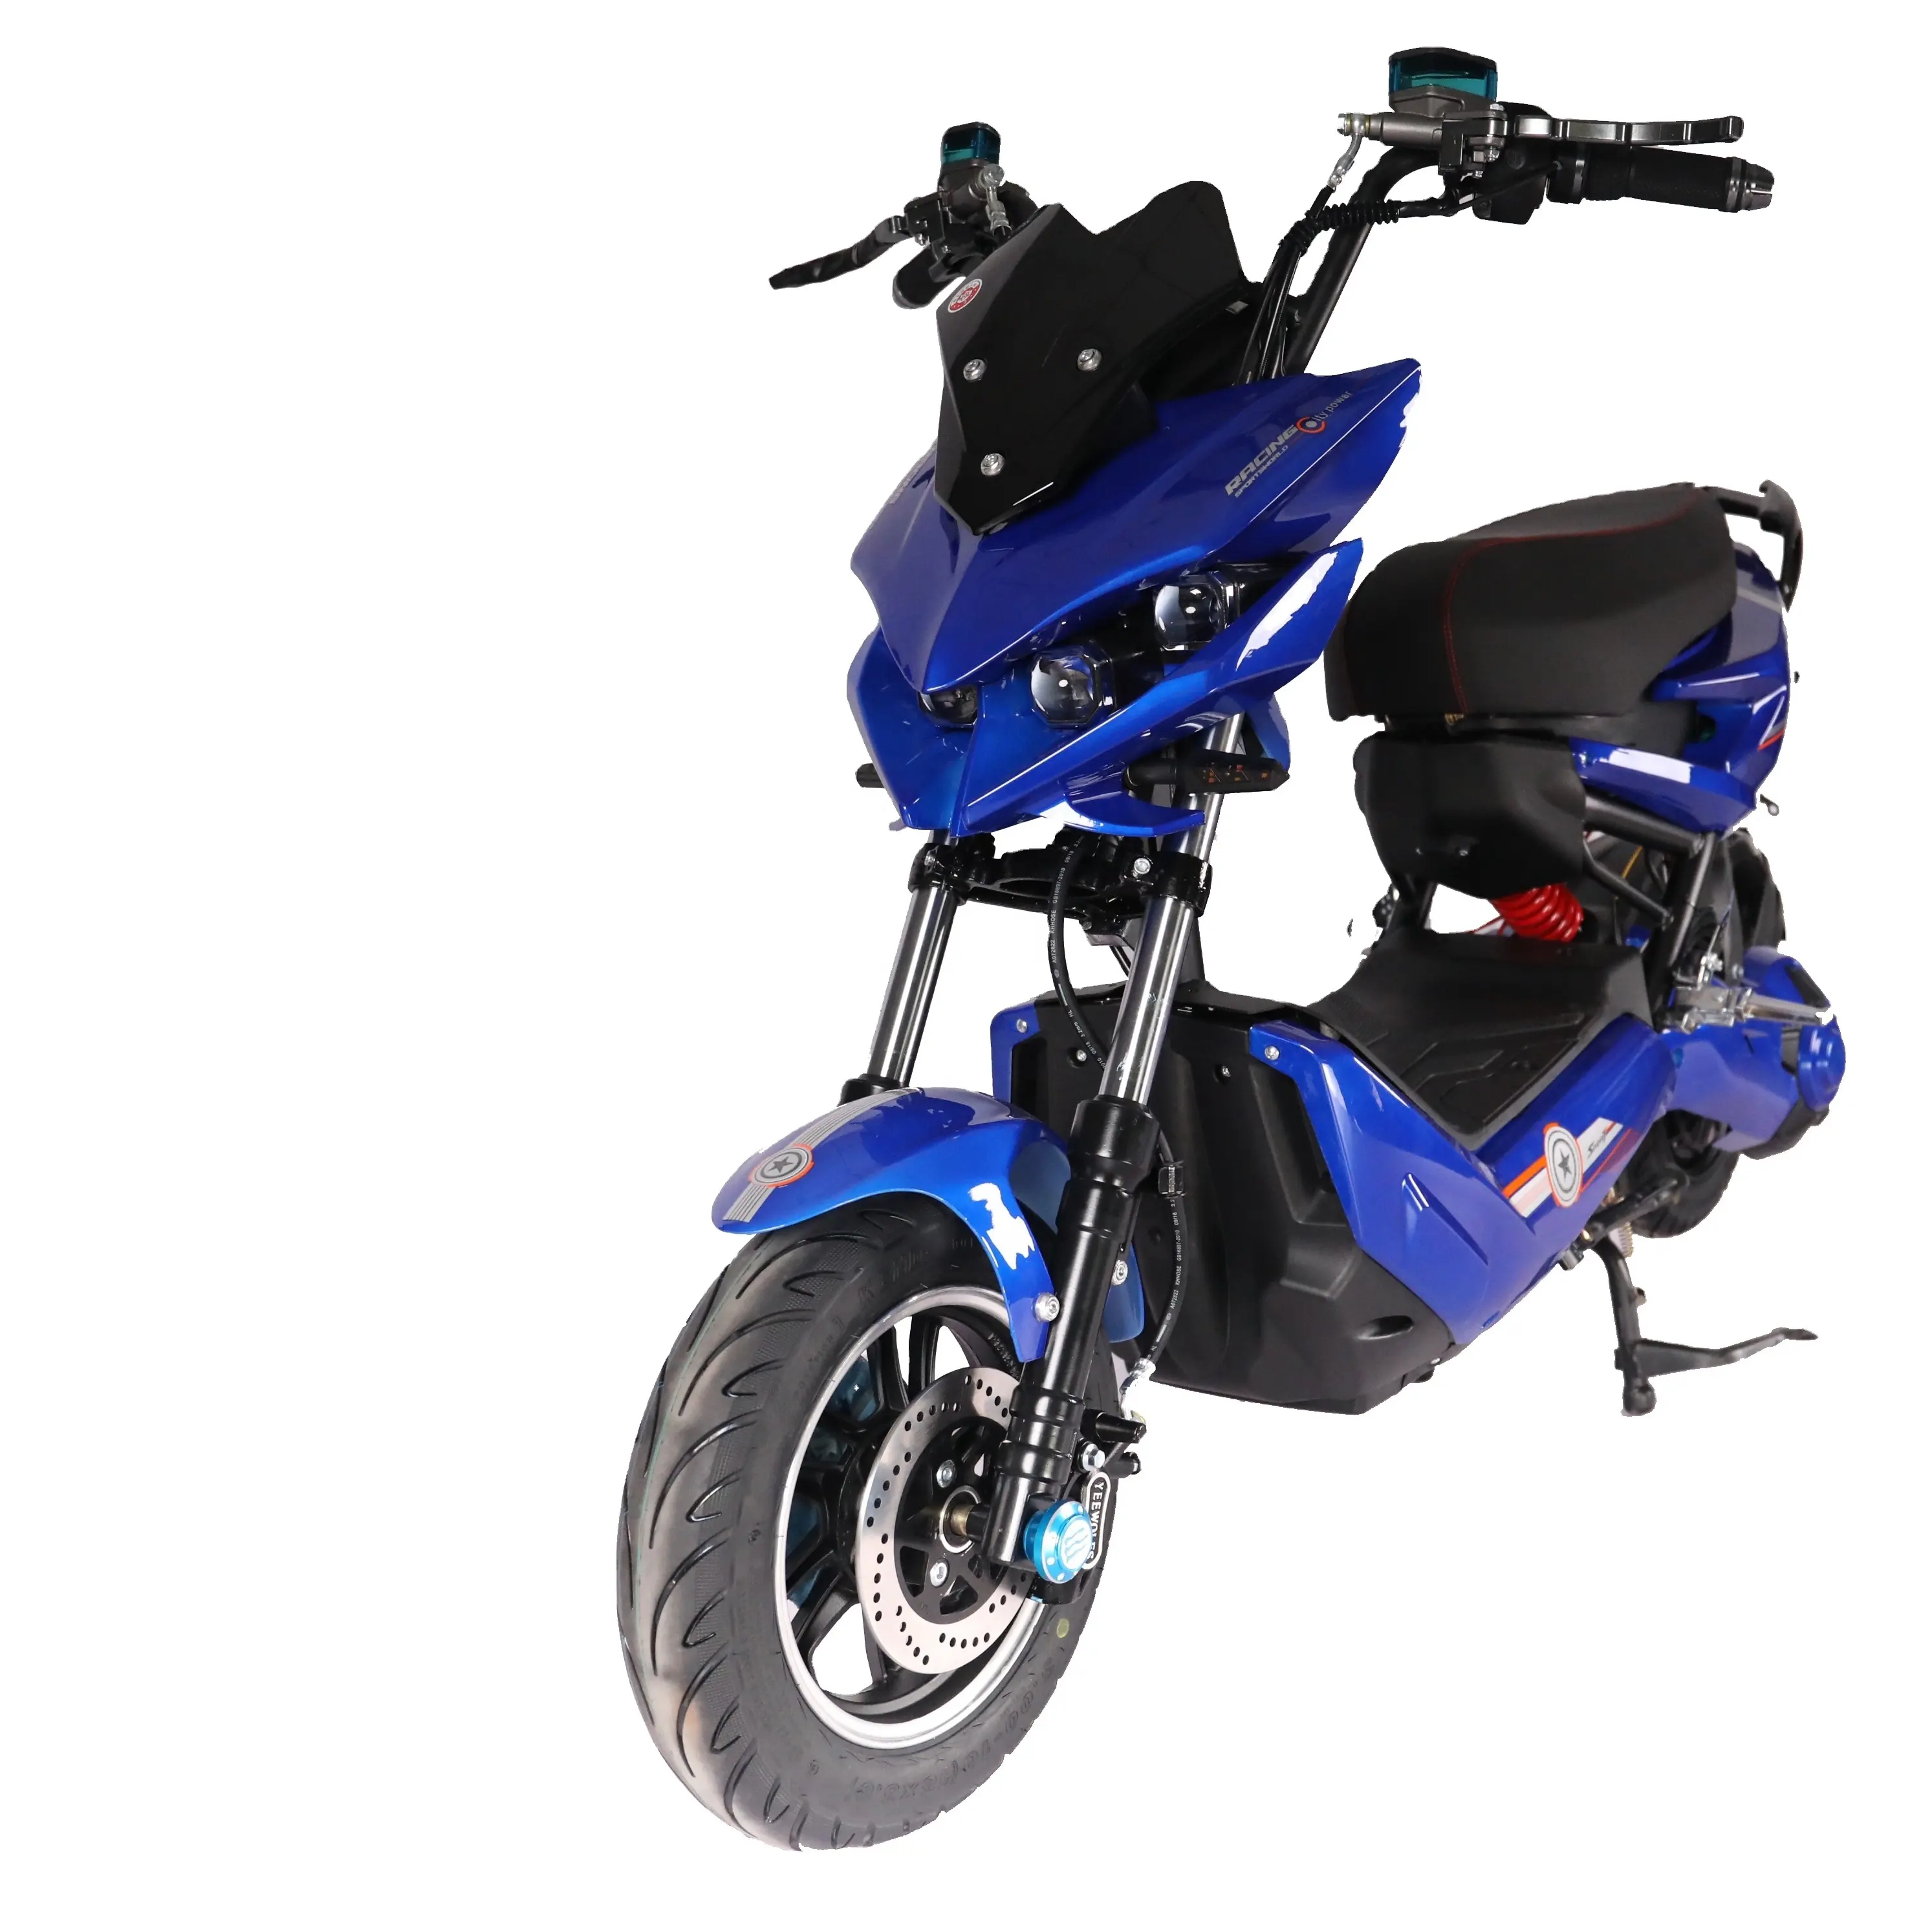 Scooter elétrica 1000w de boa qualidade fabricantes chineses de bicicletas elétricas ciclomotor scooter elétrico